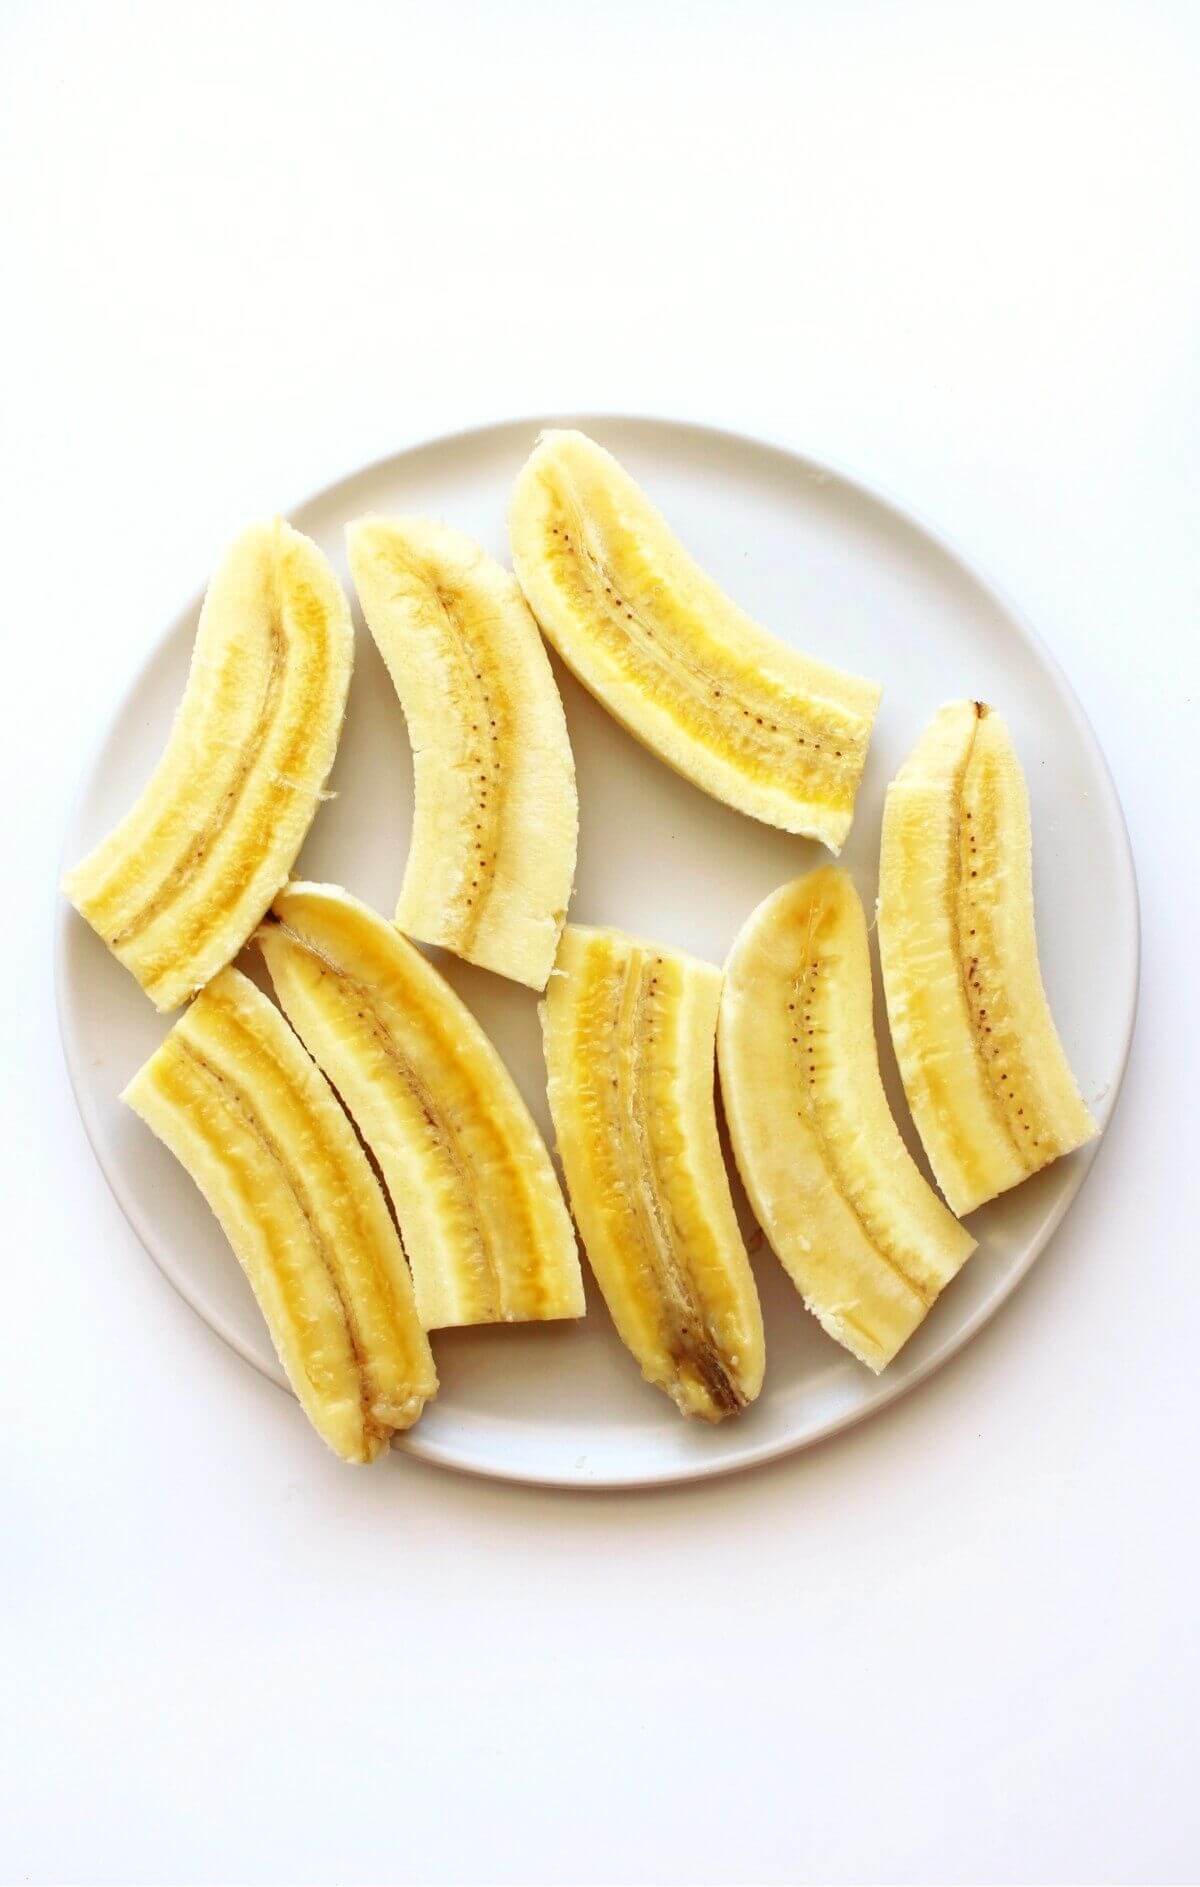 sliced bananas for banana foster